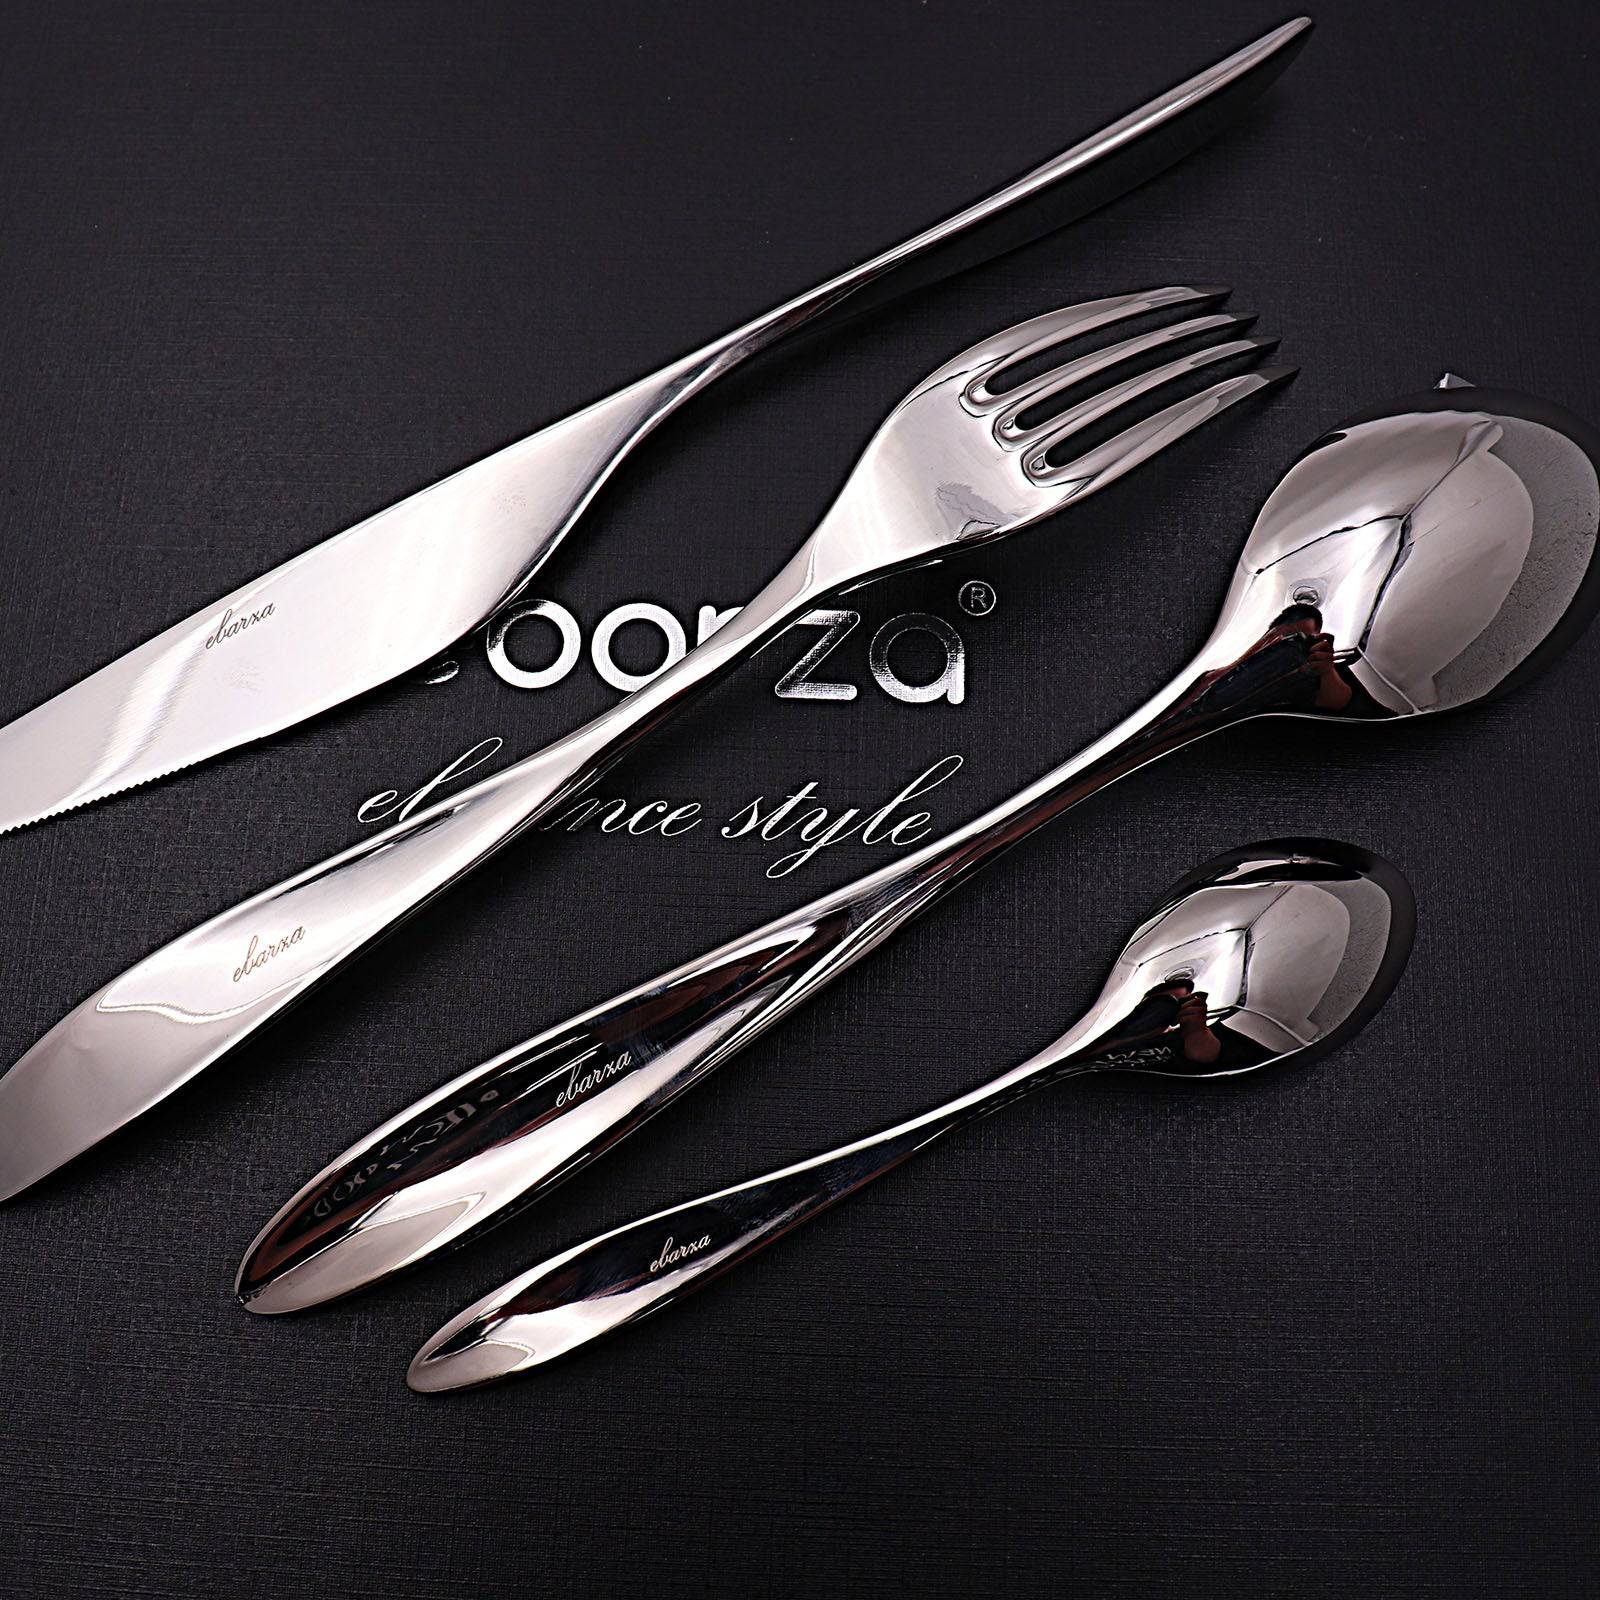 Set Of 24 Pieces Lyon Cutlery Set 8091 -  Cutlery Sets | طقم أدوات مائدة ليون 24 قطعة - ebarza Furniture UAE | Shop Modern Furniture in Abu Dhabi & Dubai - مفروشات ايبازرا في الامارات | تسوق اثاث عصري وديكورات مميزة في دبي وابوظبي